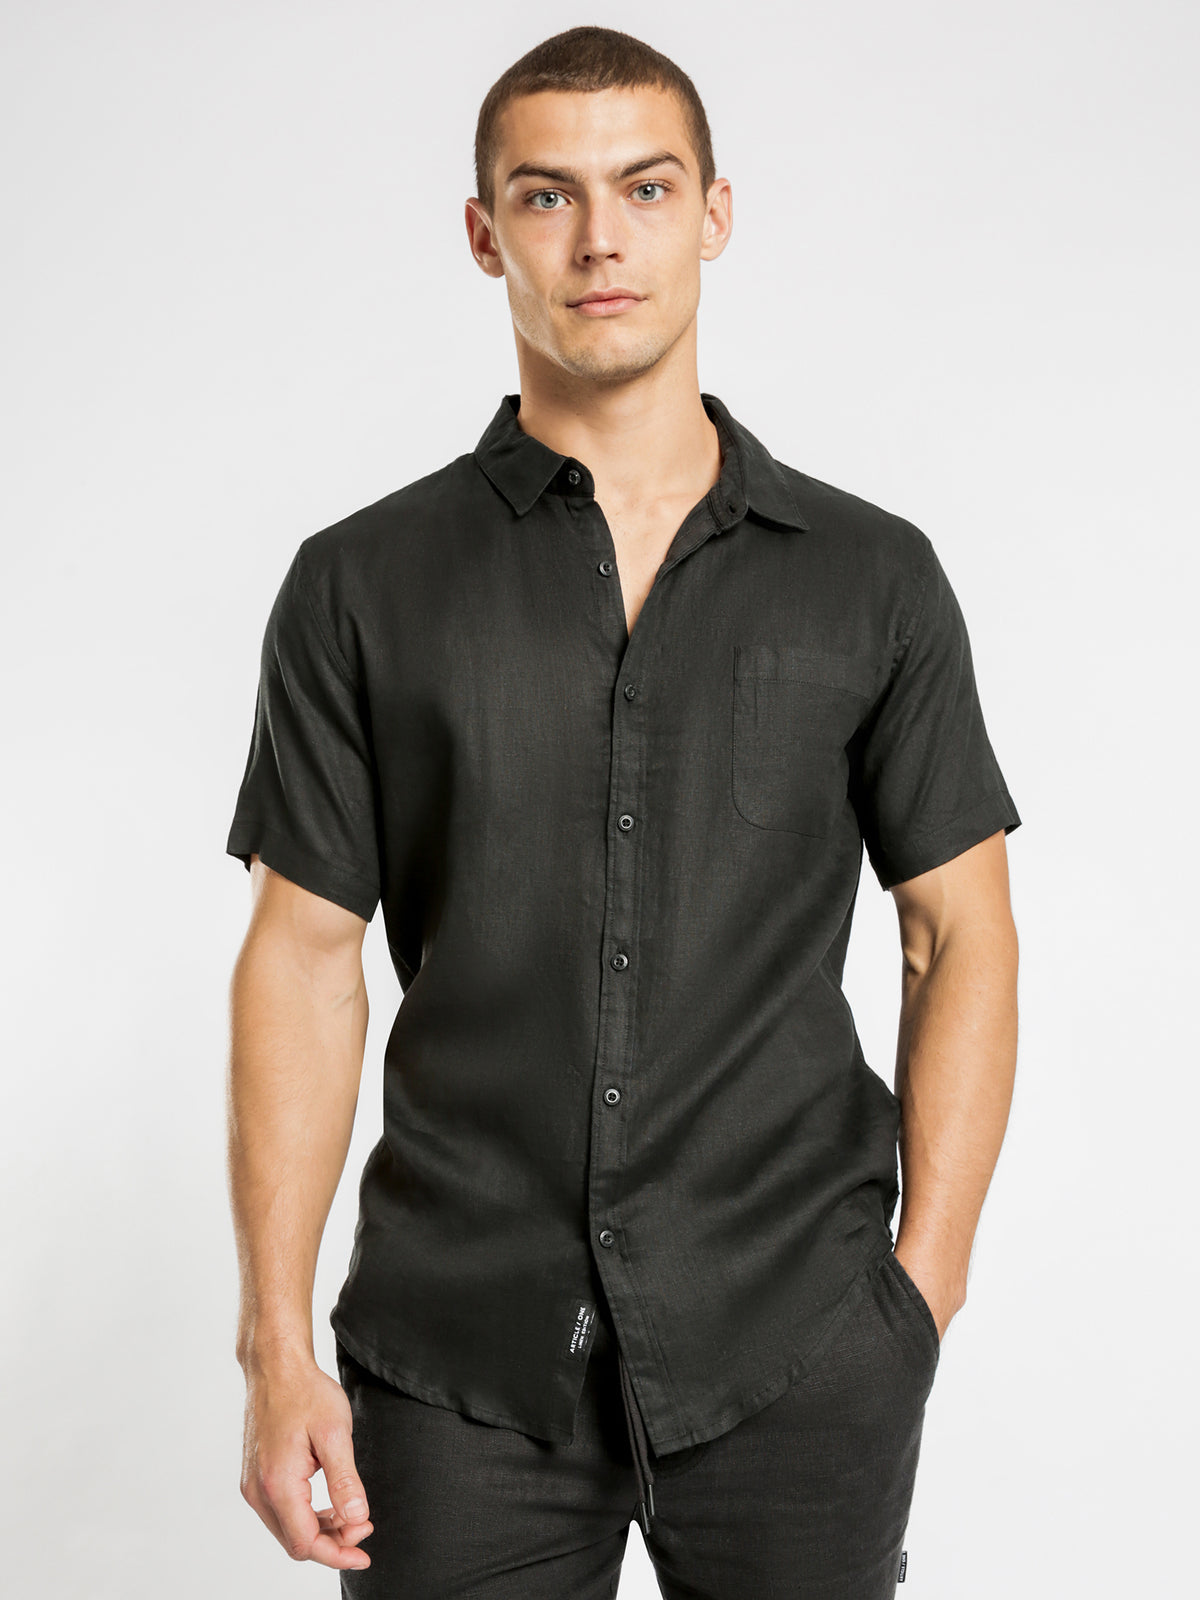 Nelson Short Sleeve Shirt in Black Linen